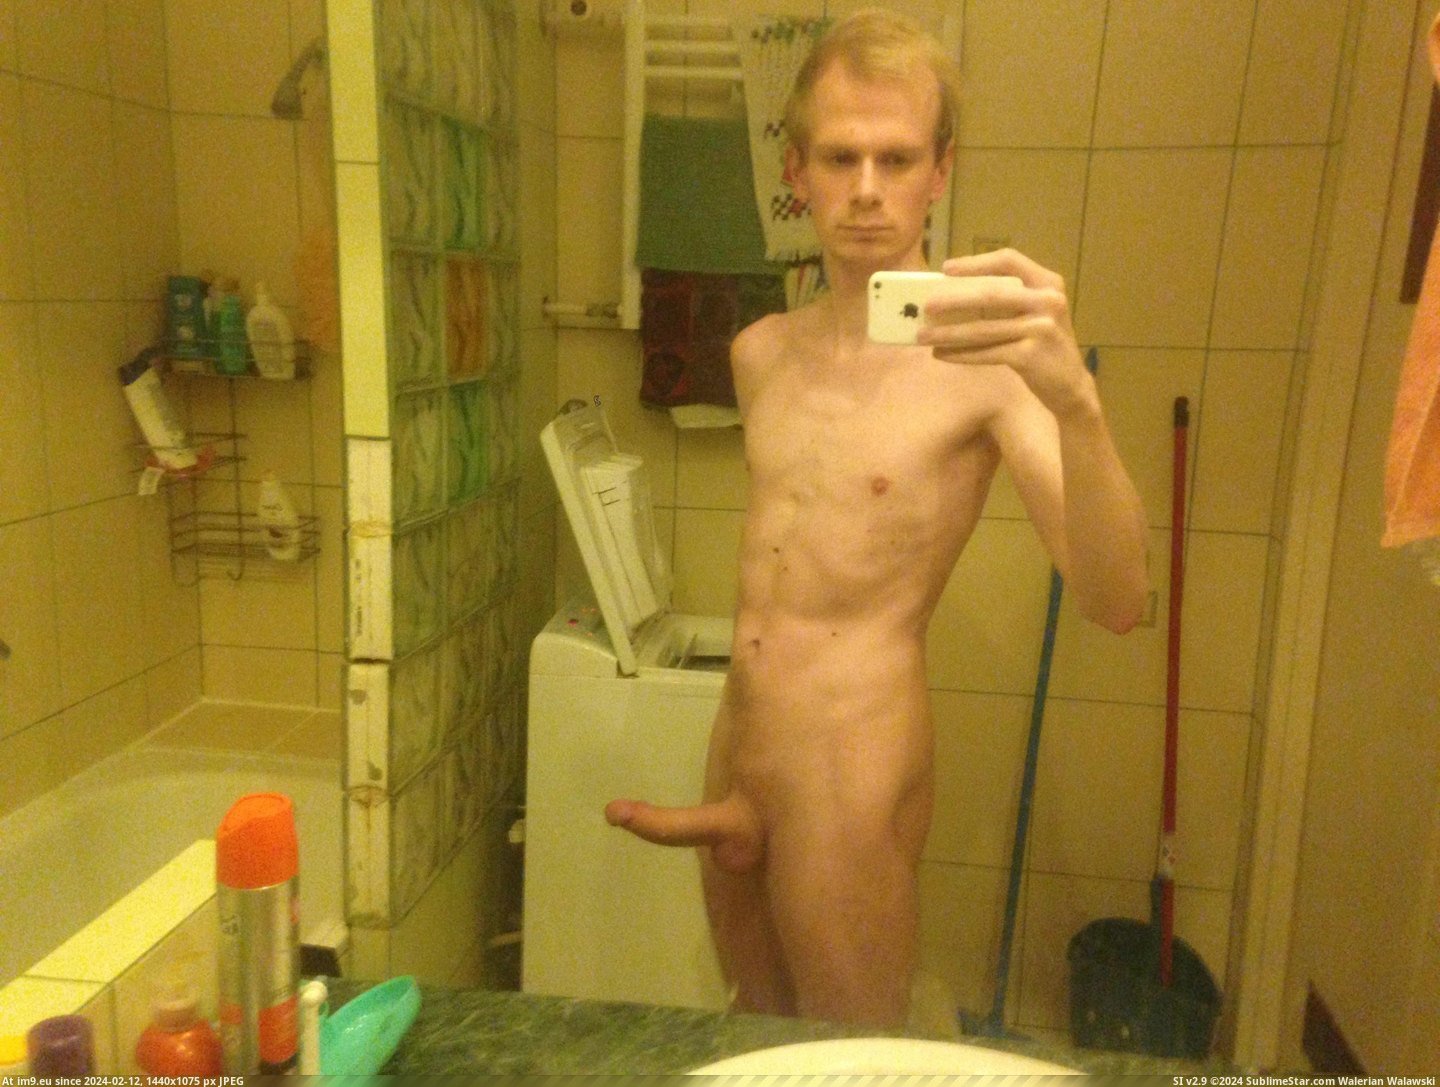 #Nude #Dick #Boner #Male #Penis IMG_0697[1] Pic. (Image of album ))